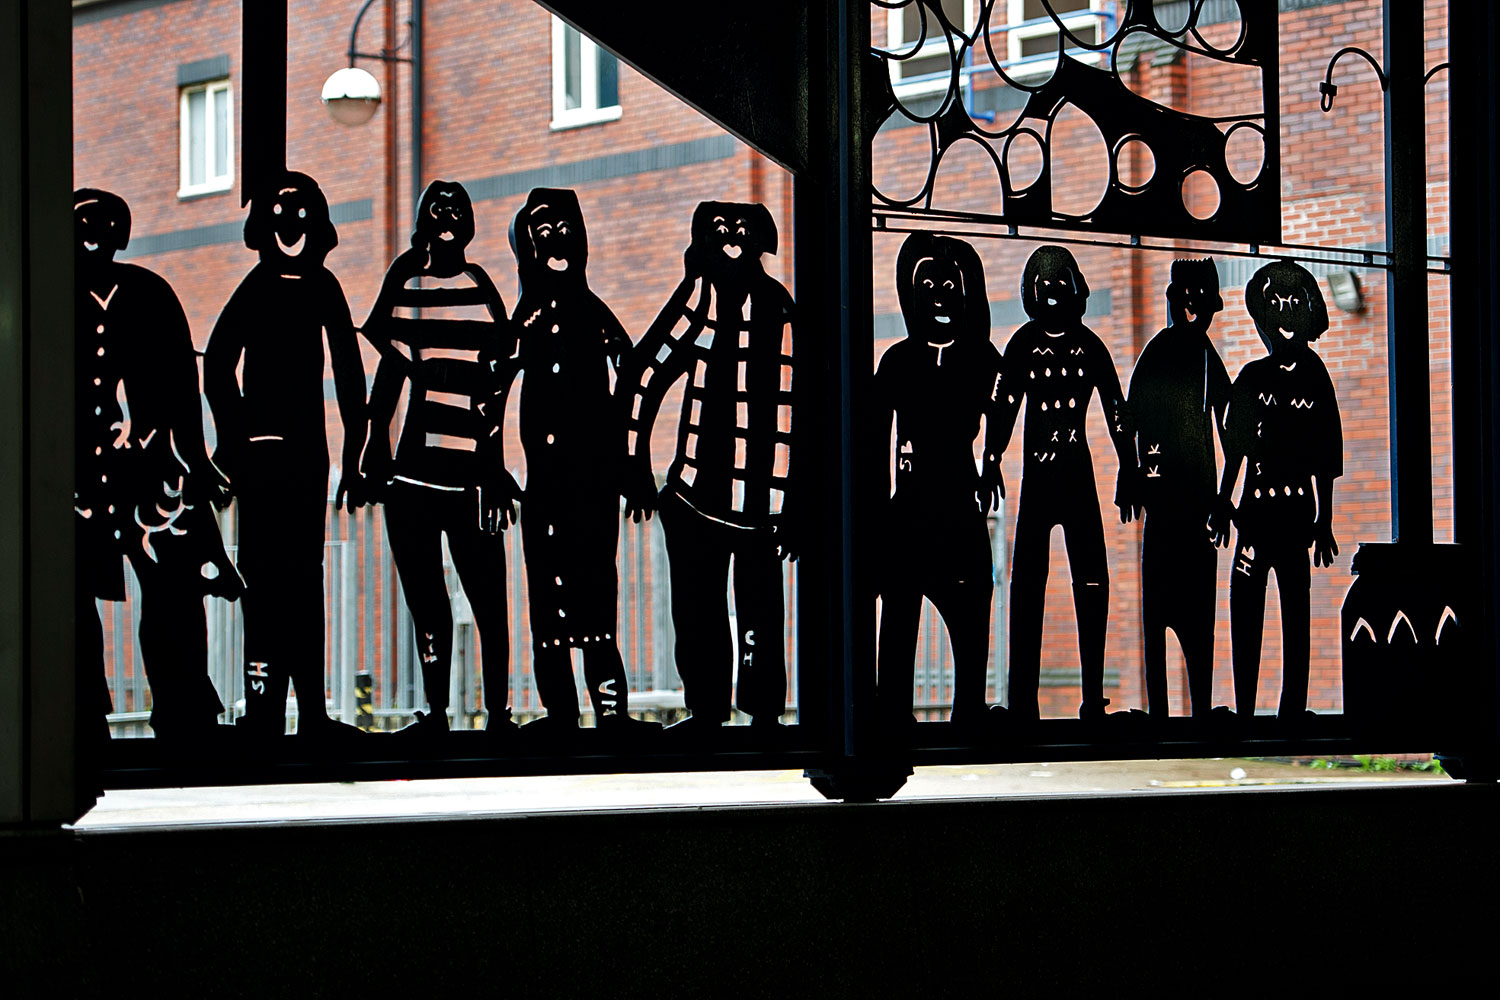 Utcai alkotás Rotherhamben – az észak-angliai városban 1400 gyermeket bántalmaztak szexuálisan